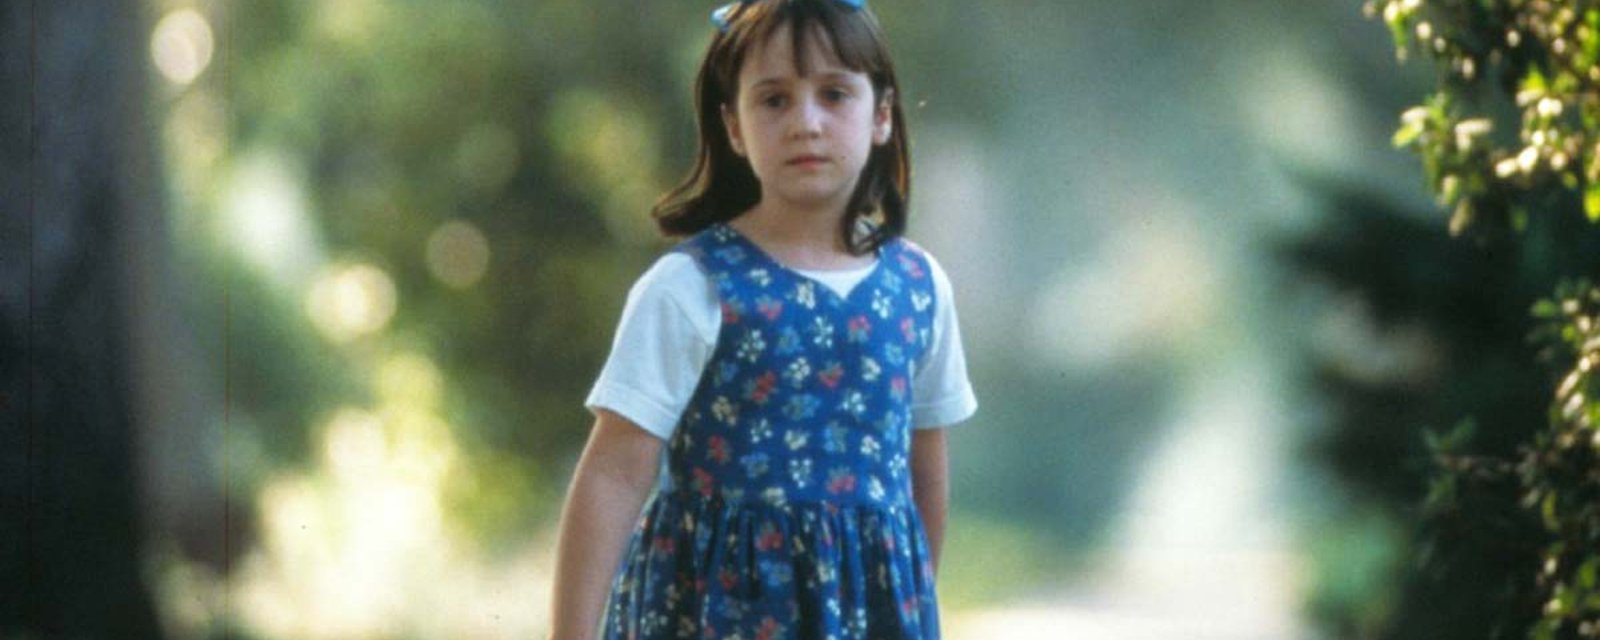 Vous vous rappelez de Matilda? Voici de quoi a l'air l'actrice, 21 ans plus tard!